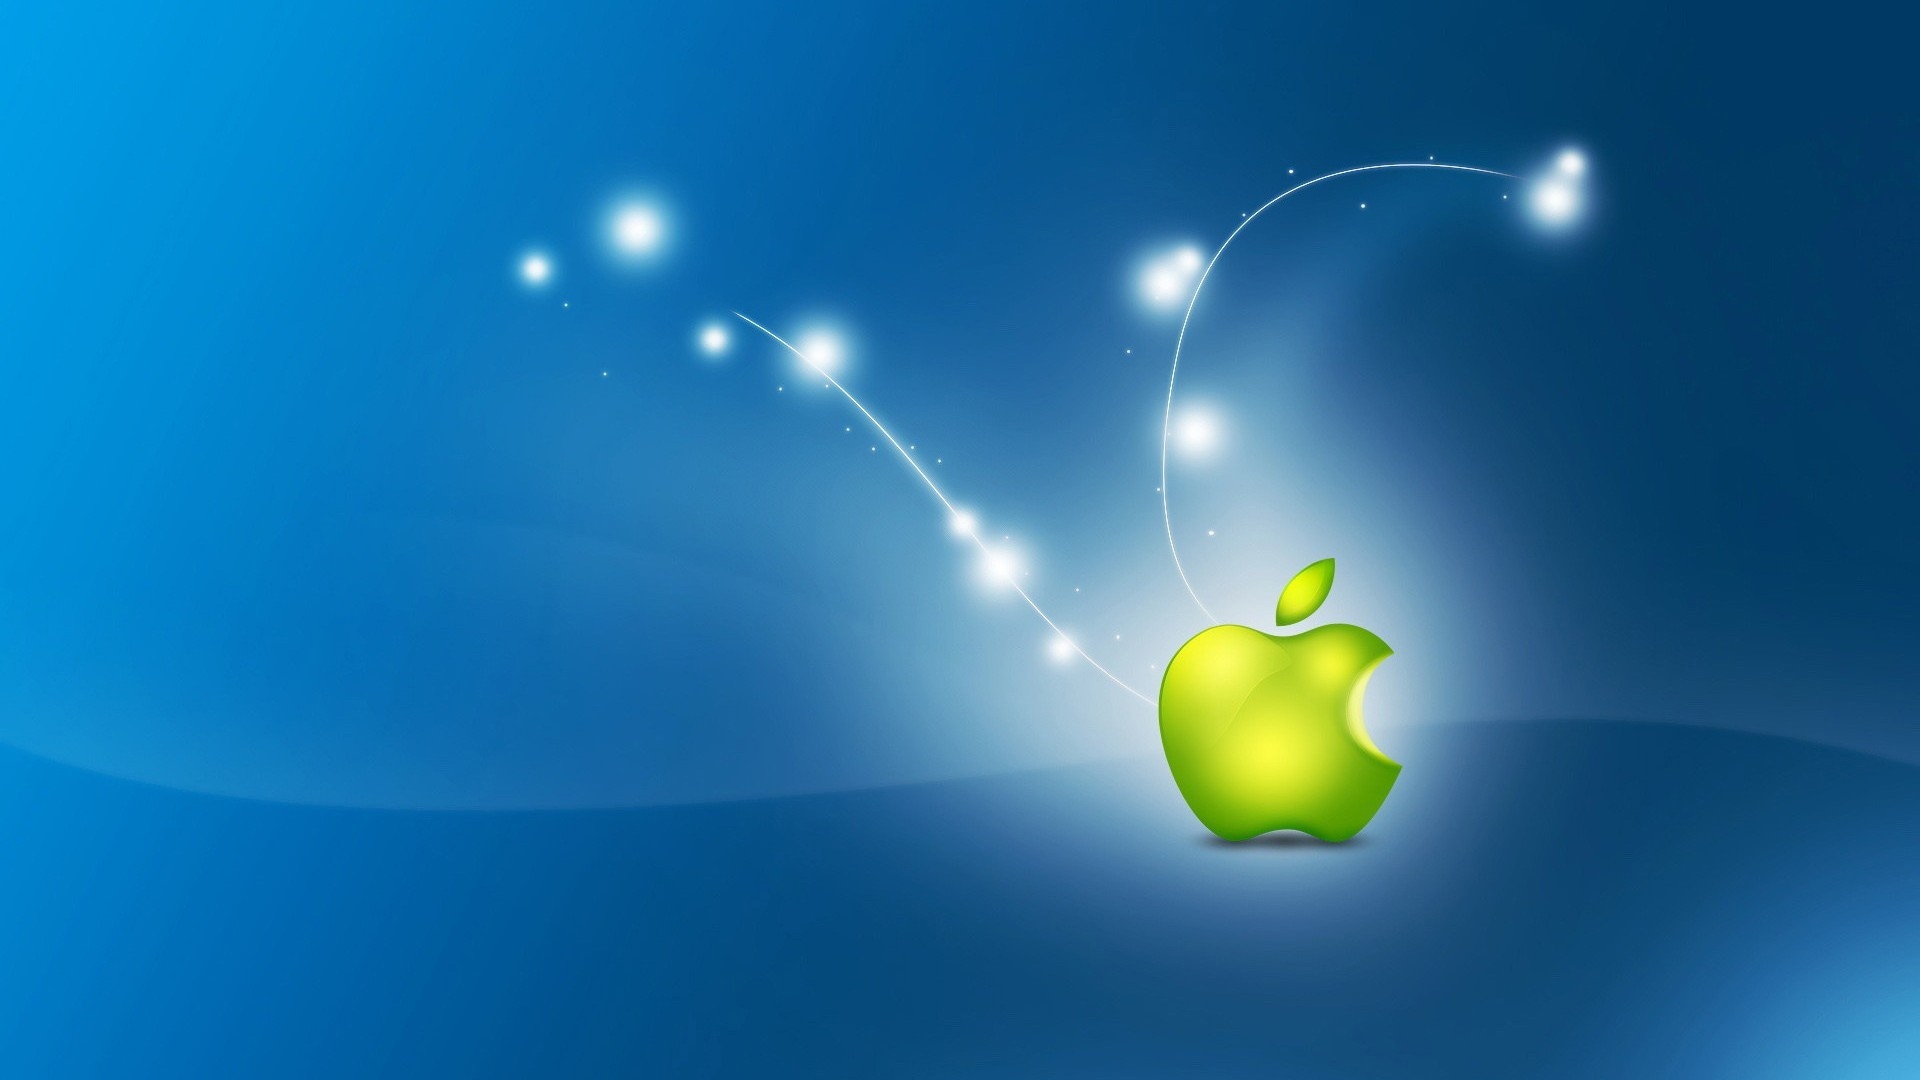 Artistic Apple Logo for 1920 x 1080 HDTV 1080p resolution